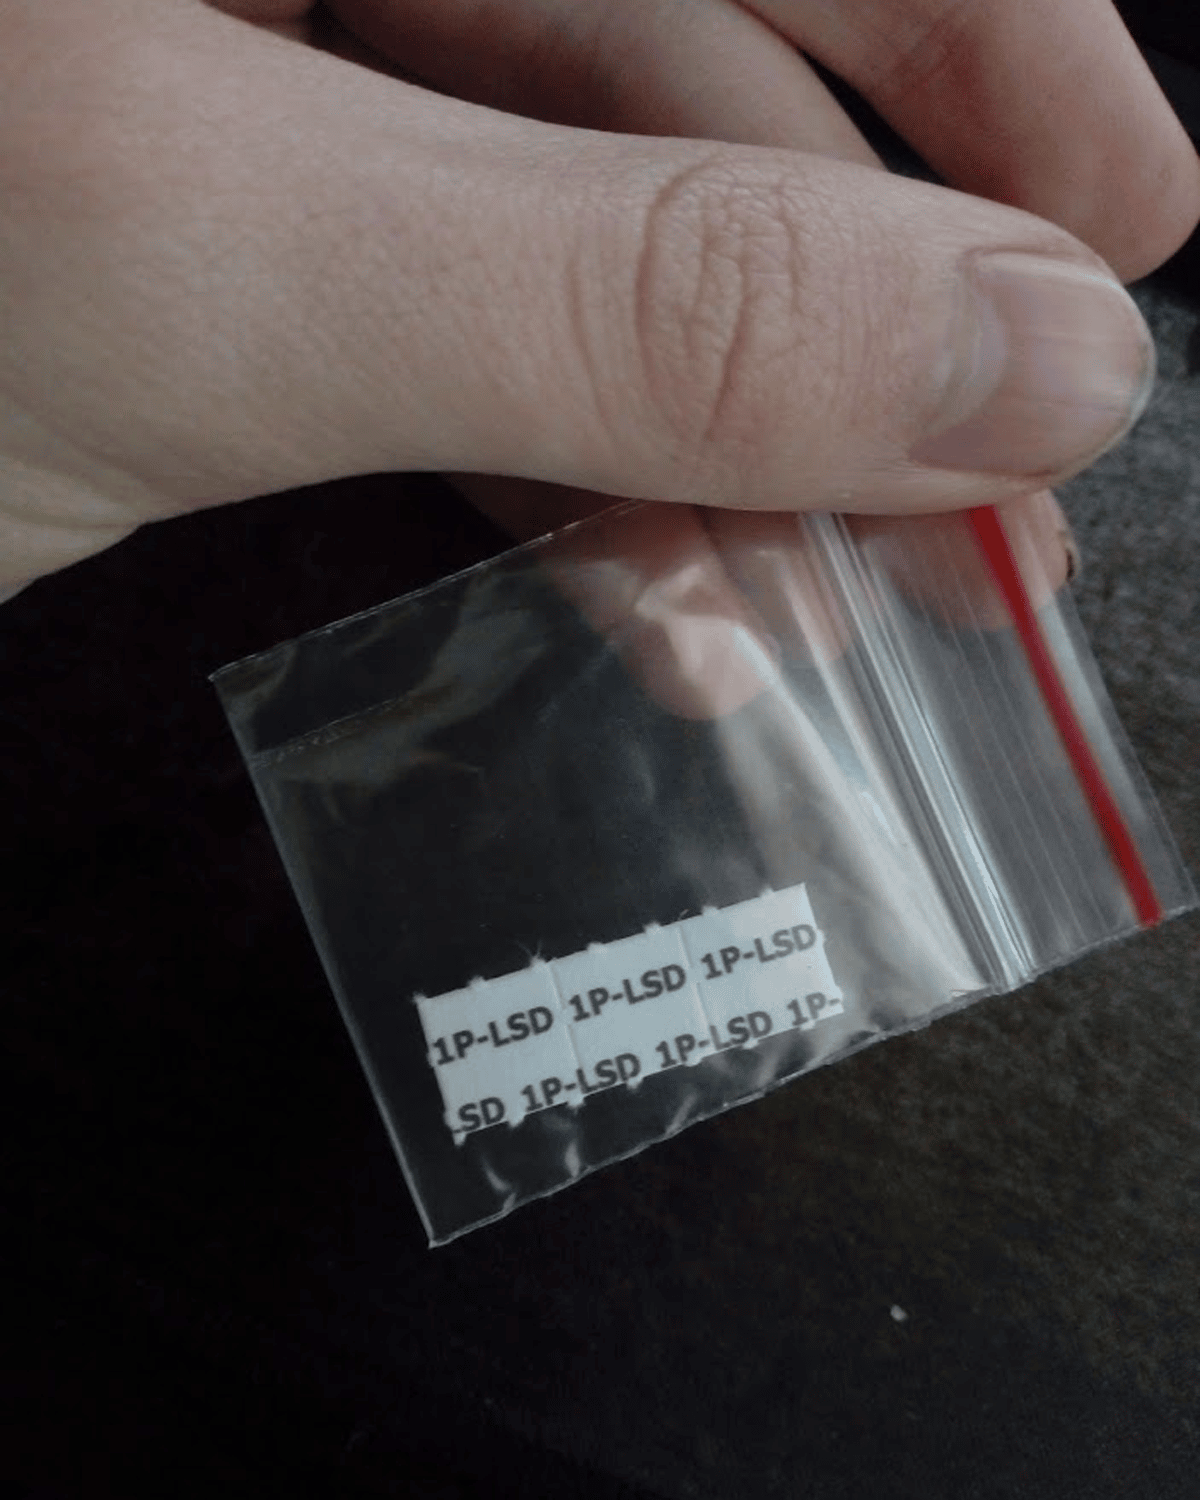 1P-LSD blotter paper